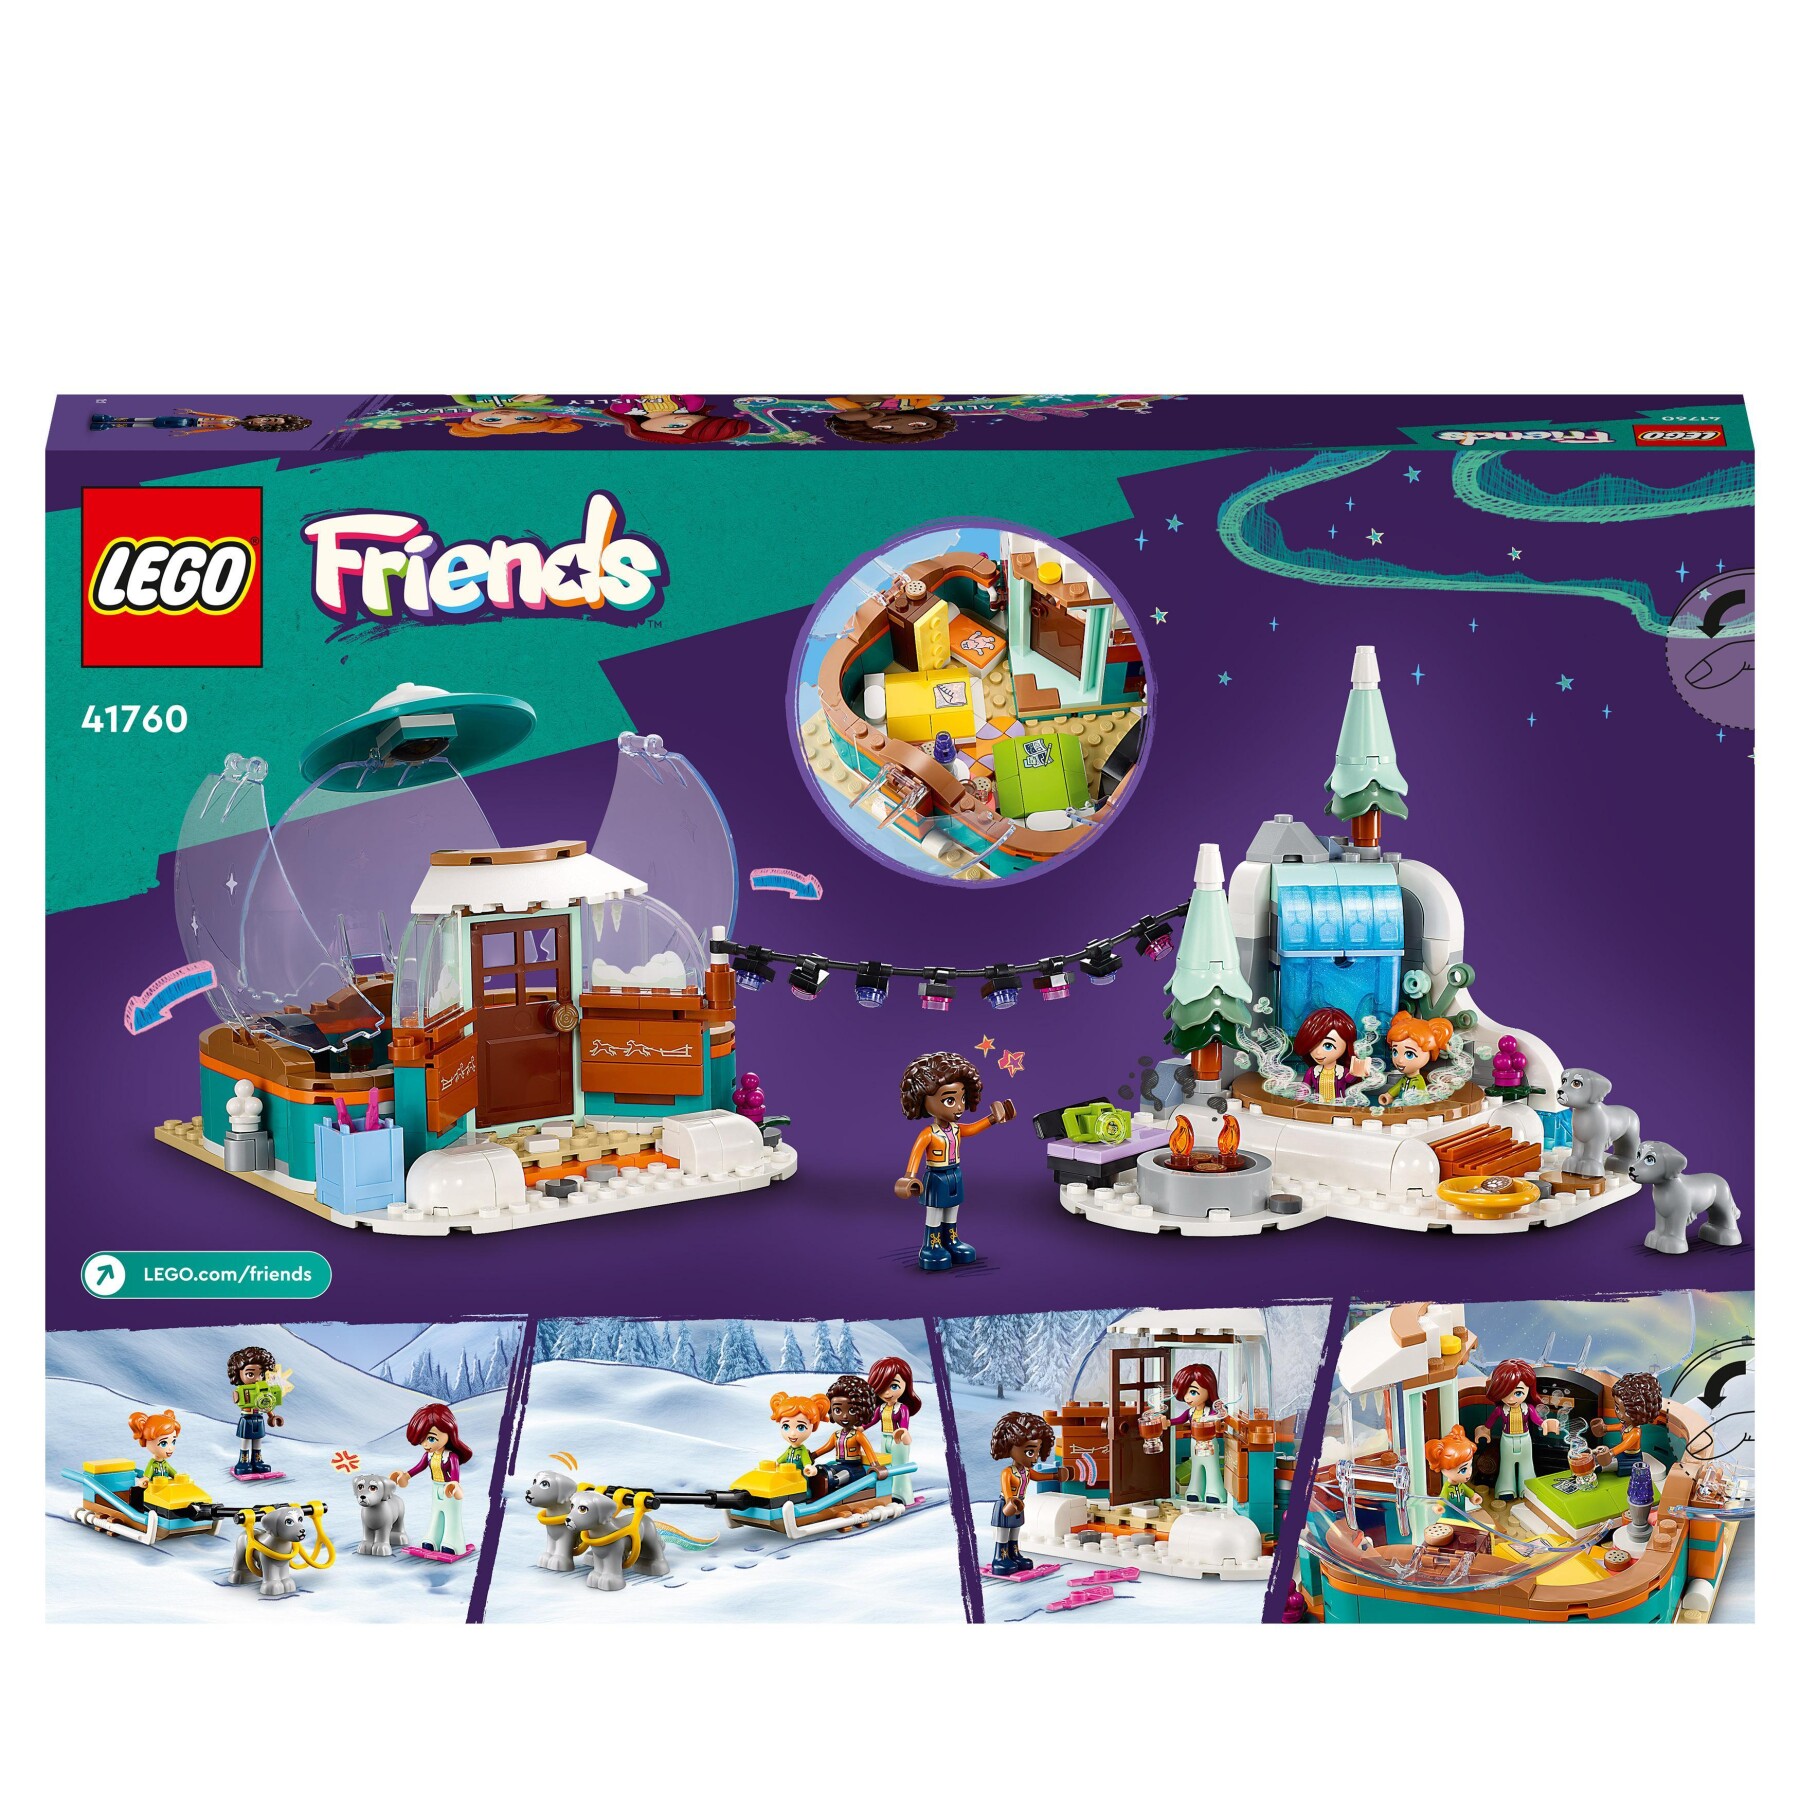 Lego friends 41760 vacanza in igloo con tenda da campeggio, 2 cani da slitta e mini bamboline, giochi per bambine e bambini - LEGO FRIENDS